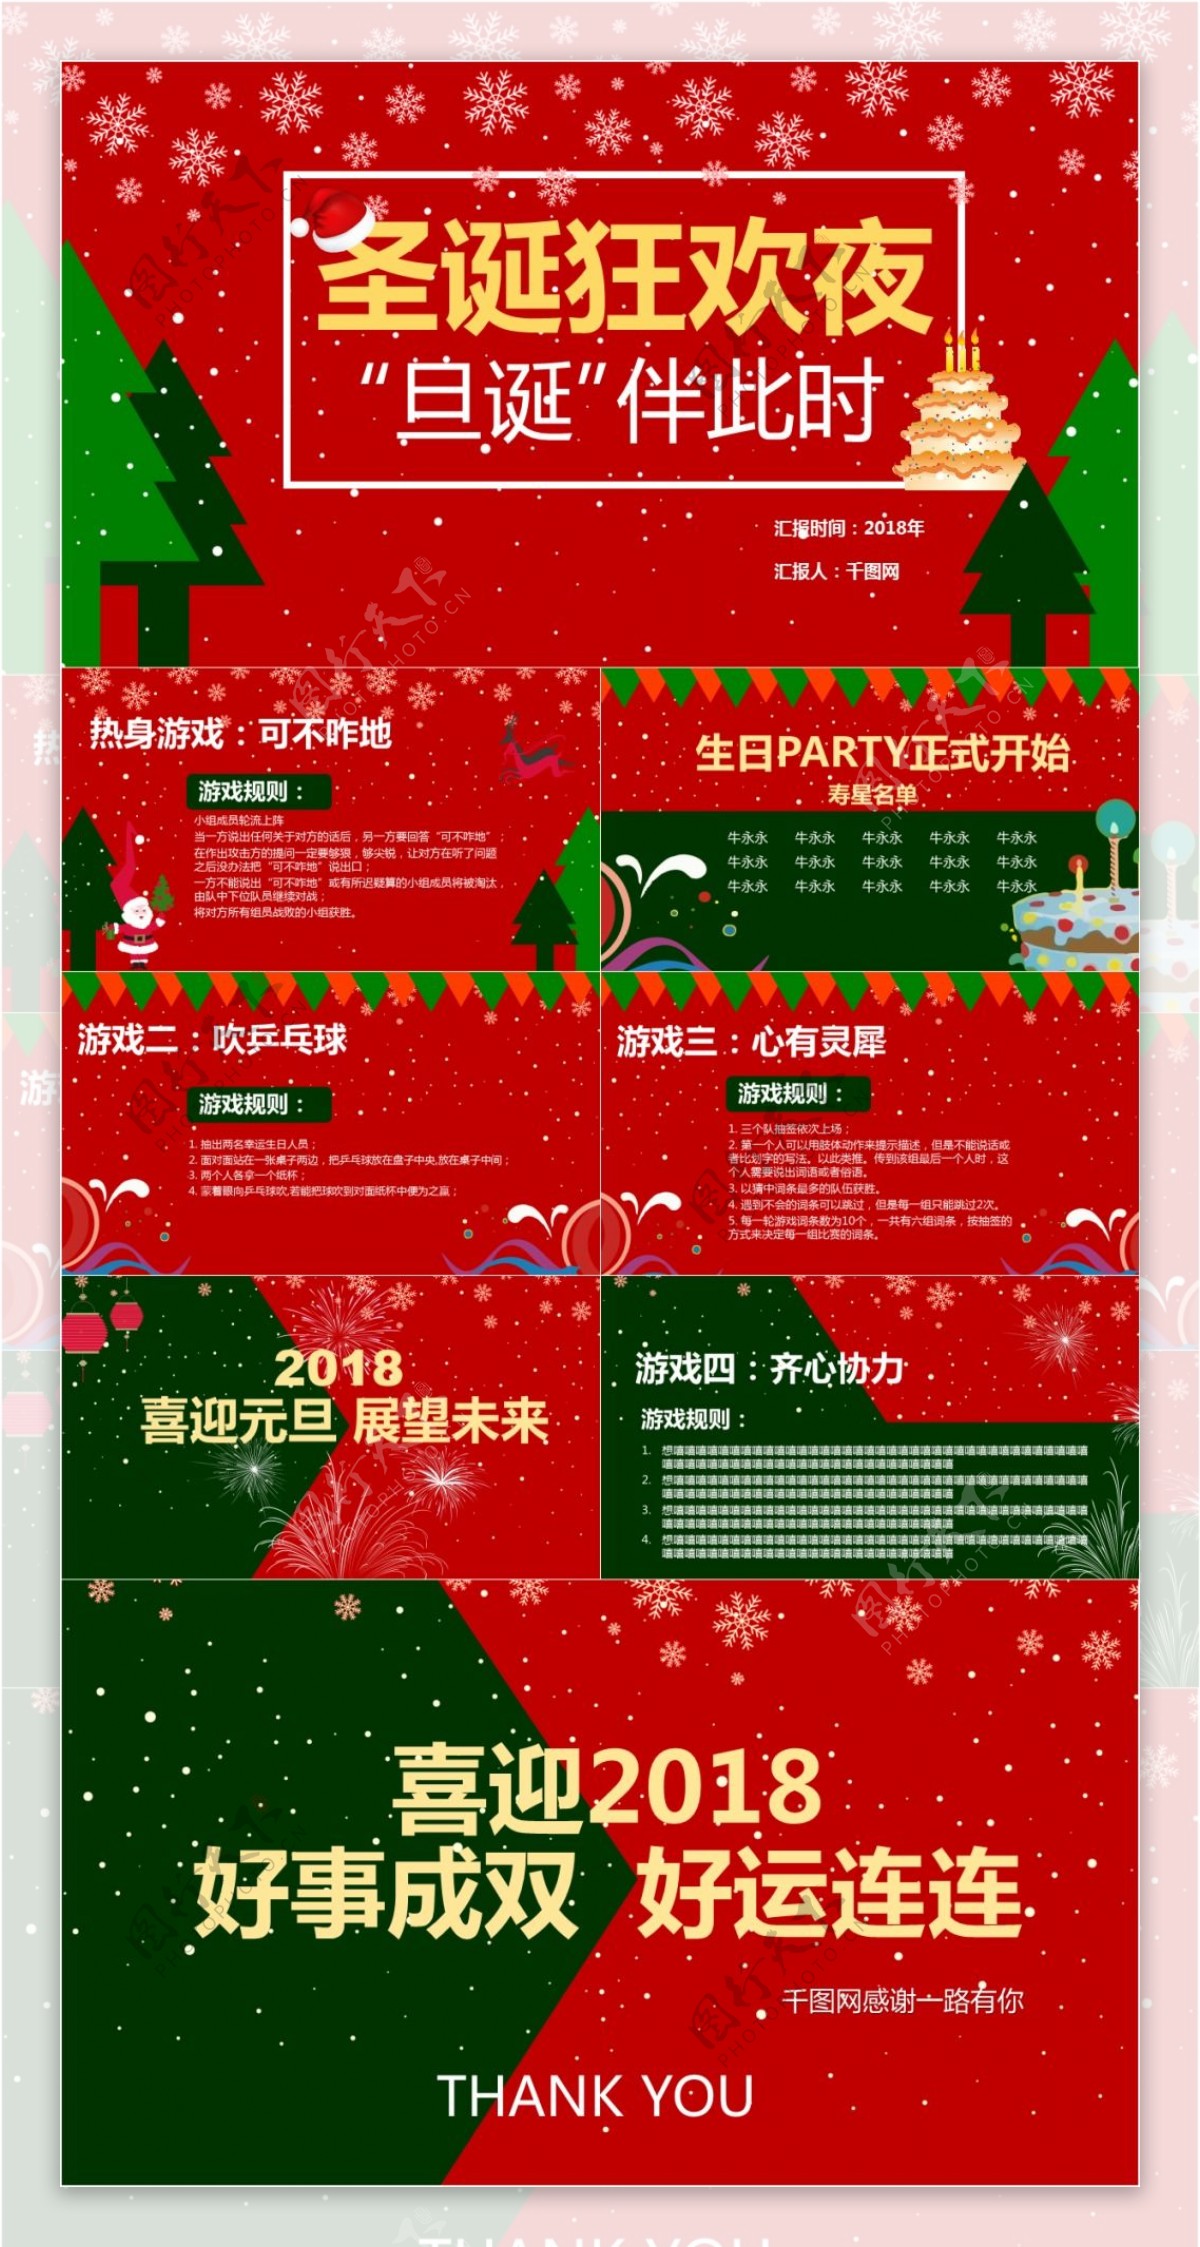 红色可爱圣诞主题活动聚会PPT模板免费下载